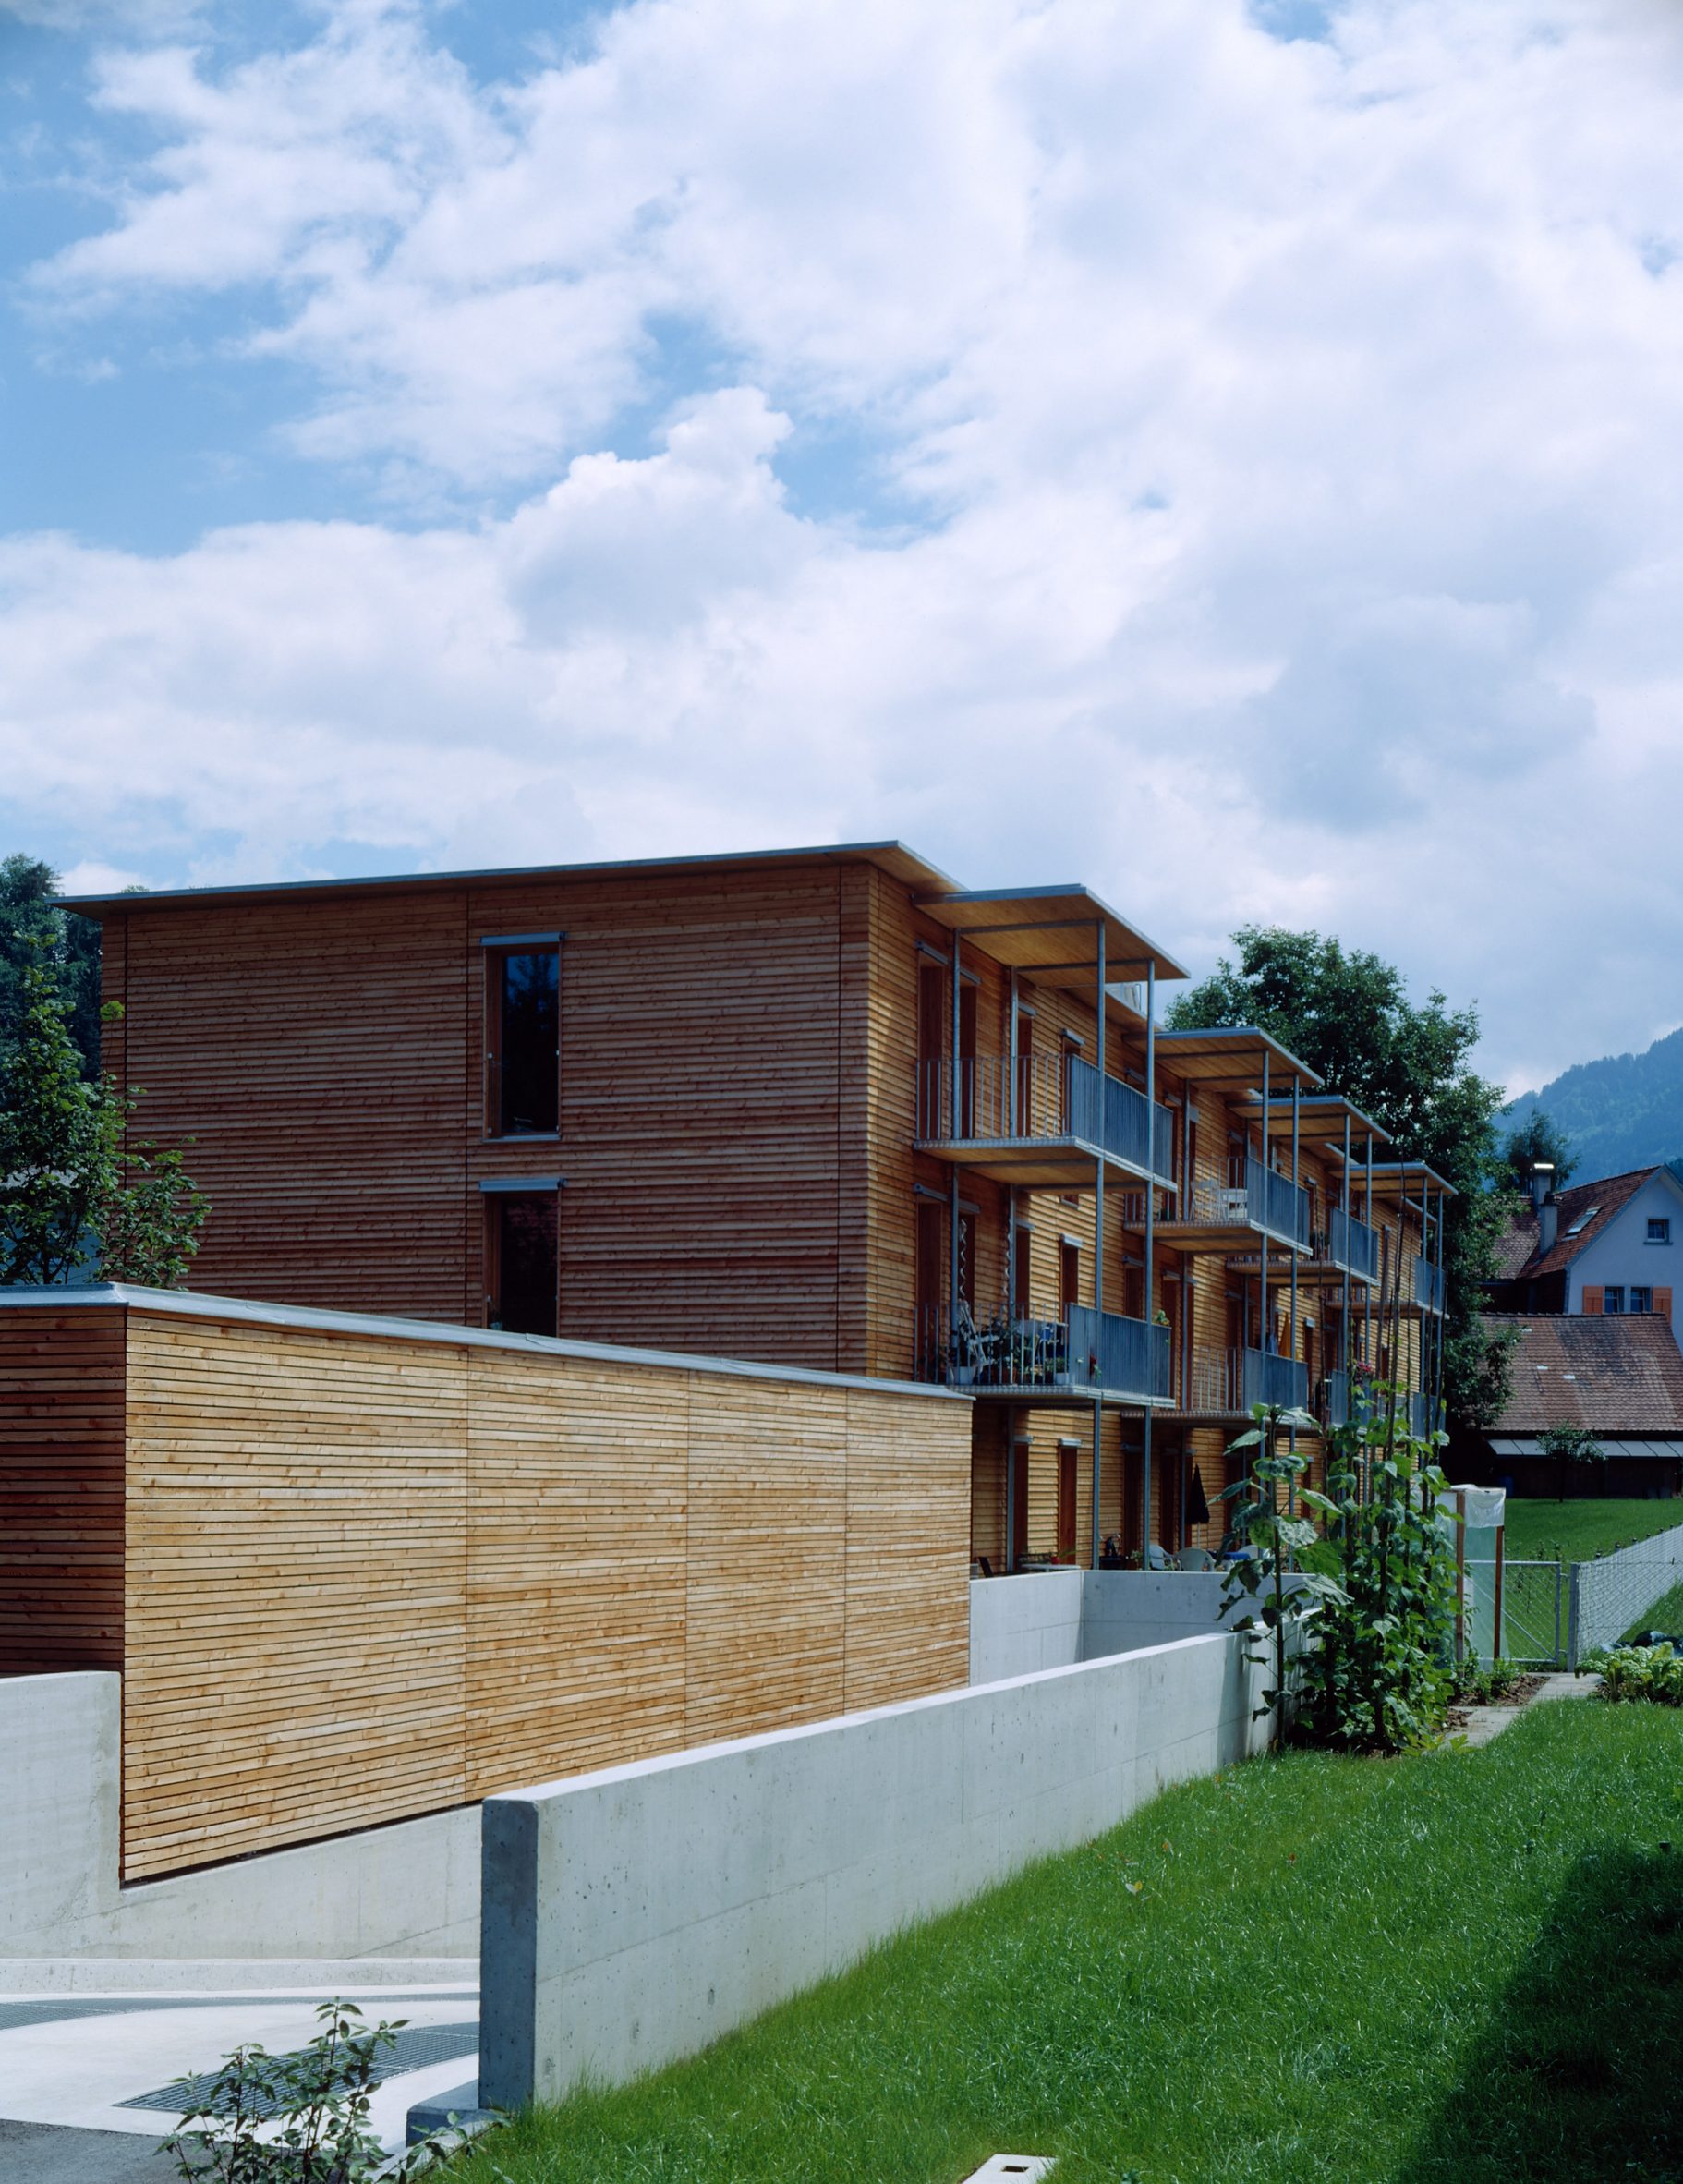 Ölzbündt building in Austria built from mass-timber